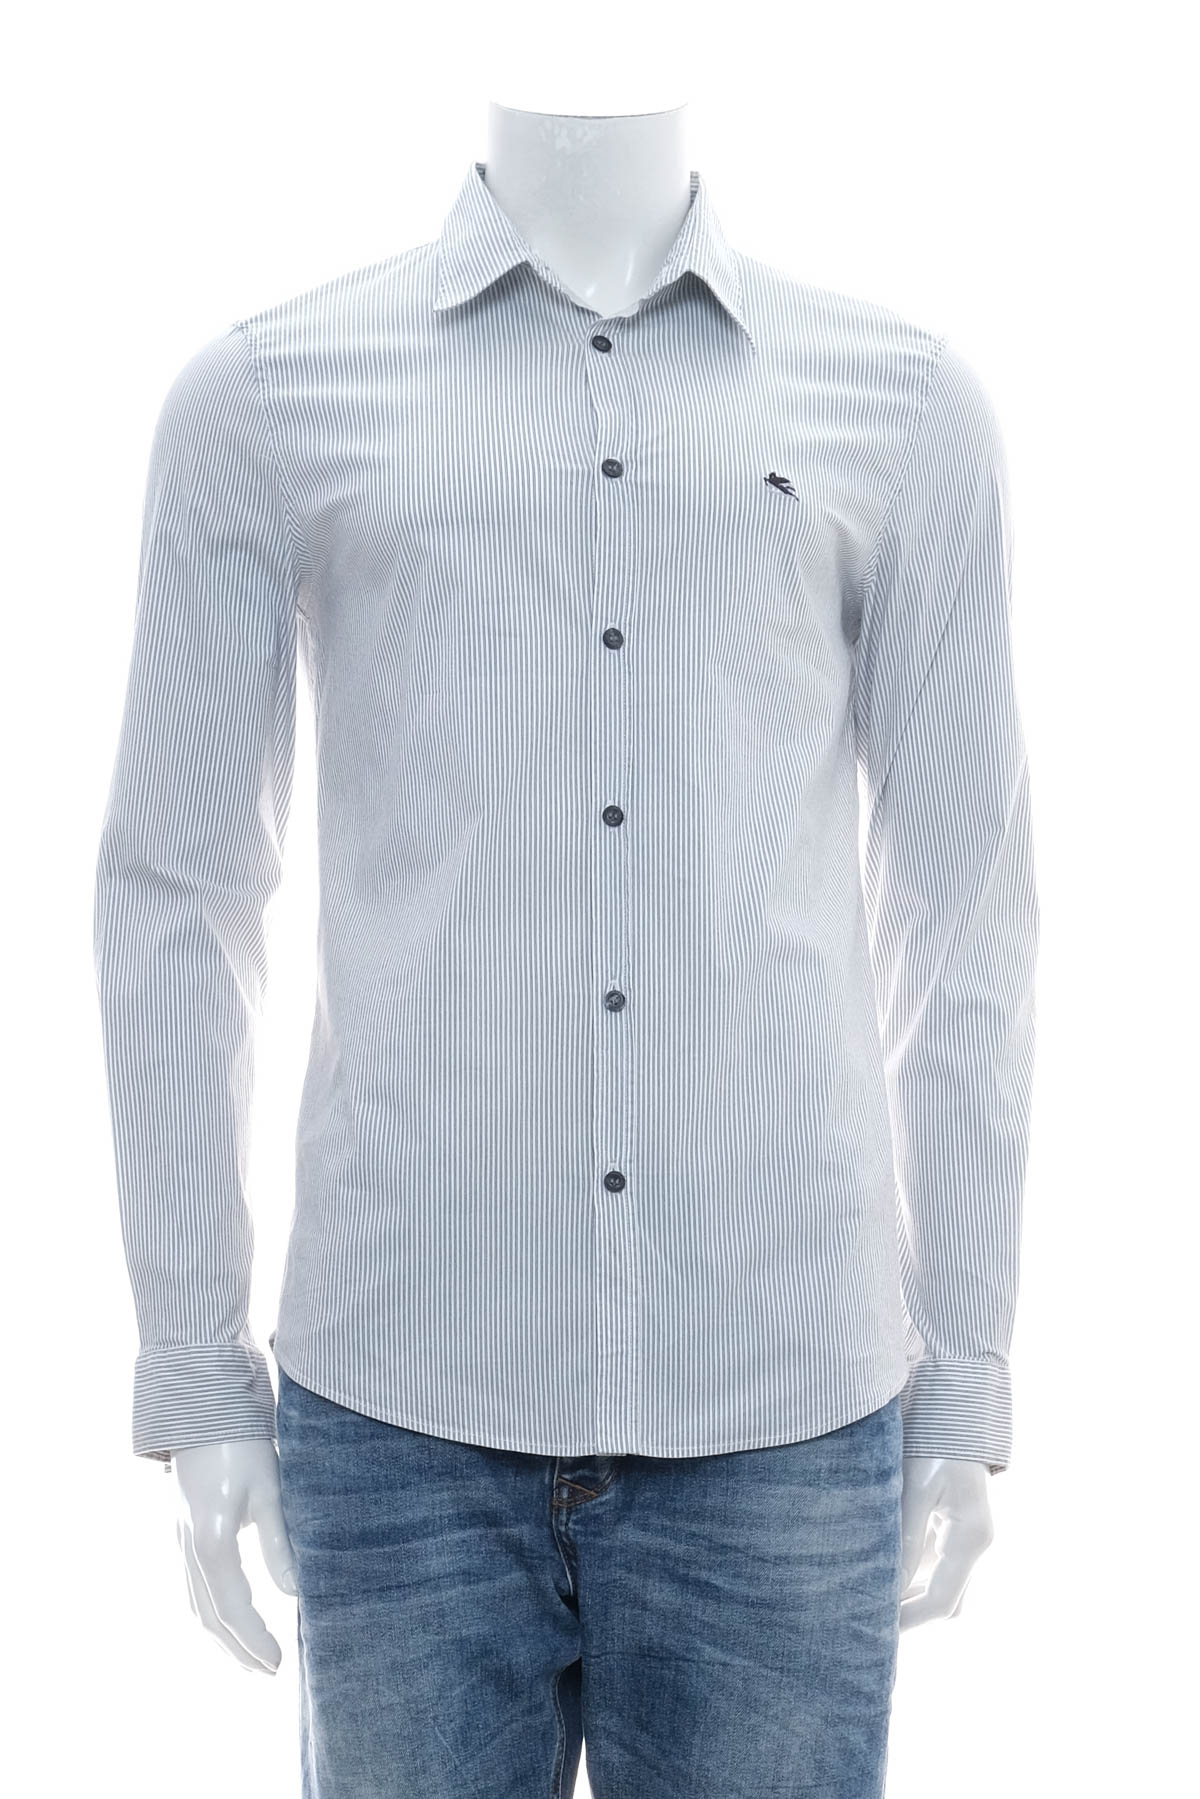 Ανδρικό πουκάμισο - Etro - 0